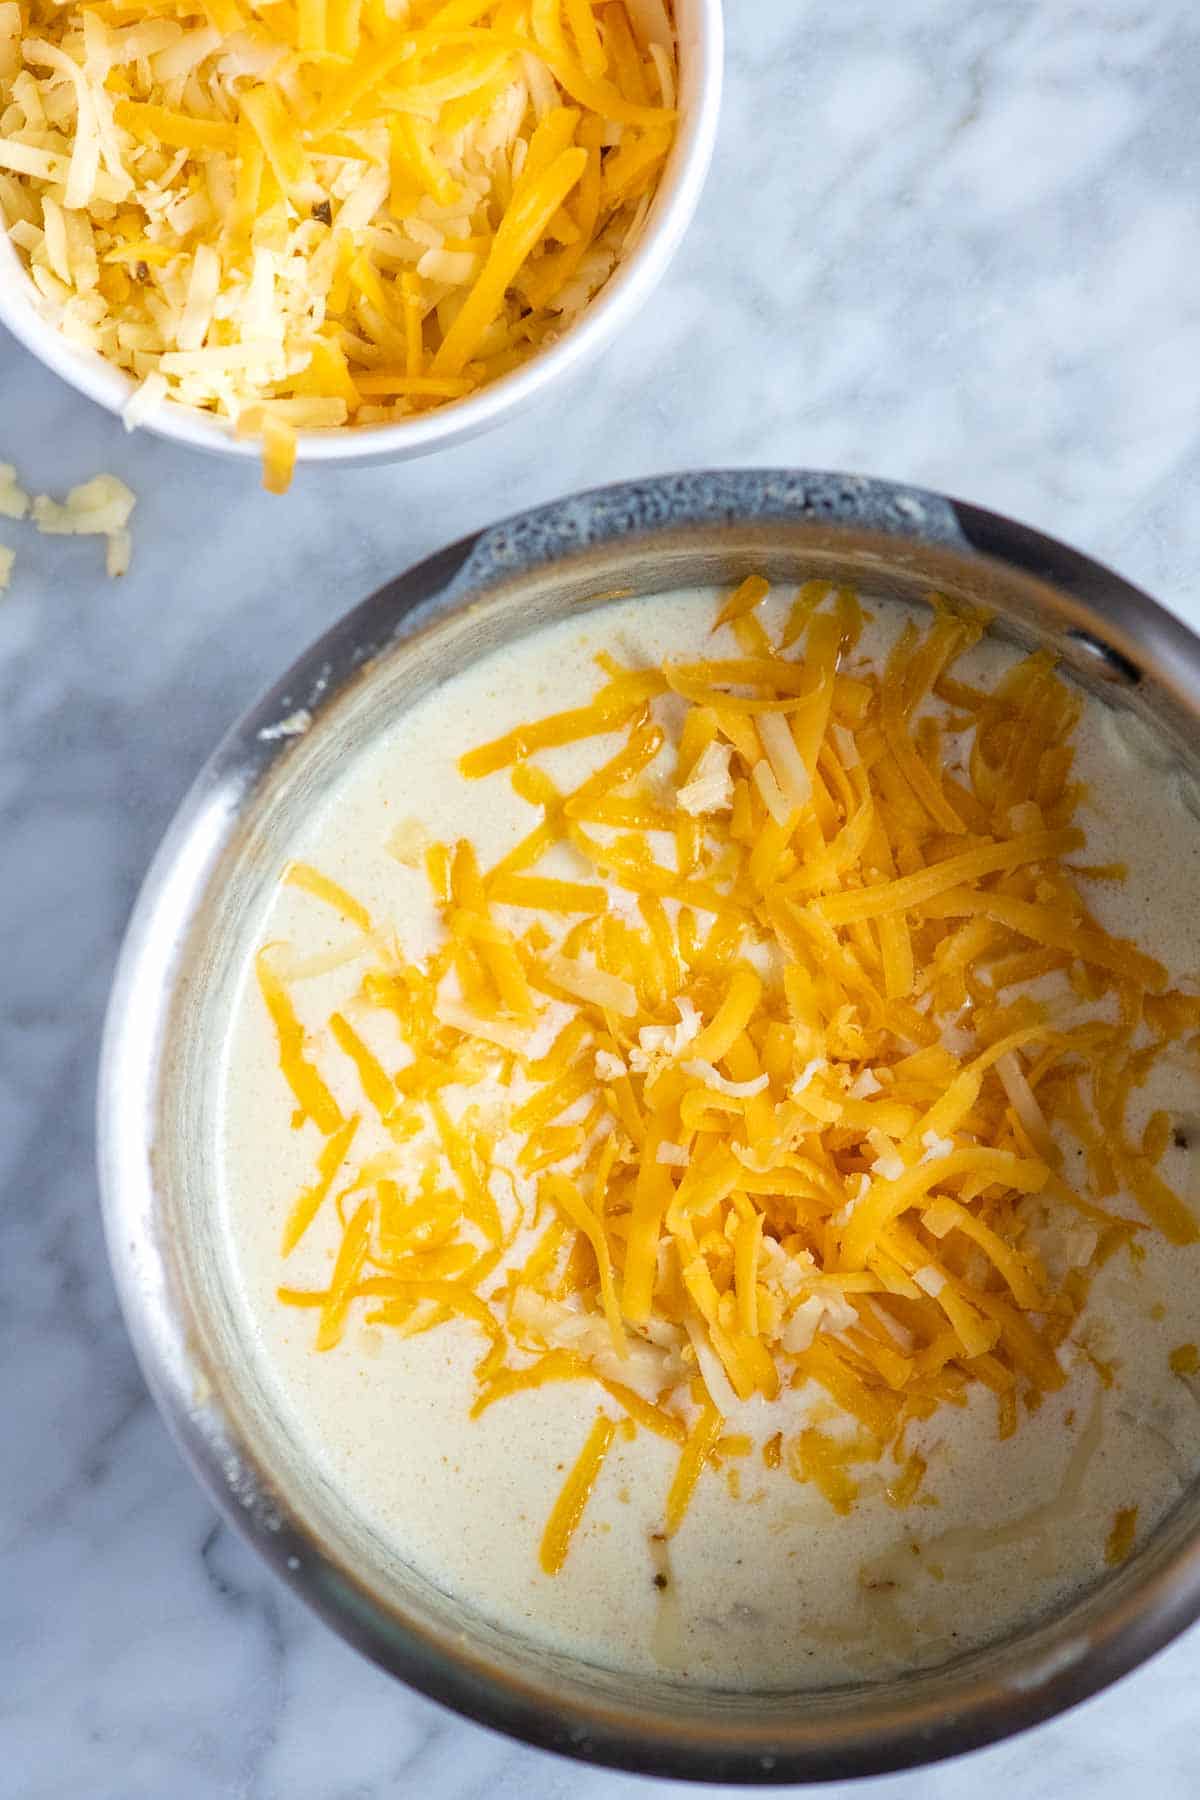 Agregar queso para hacer salsa de queso